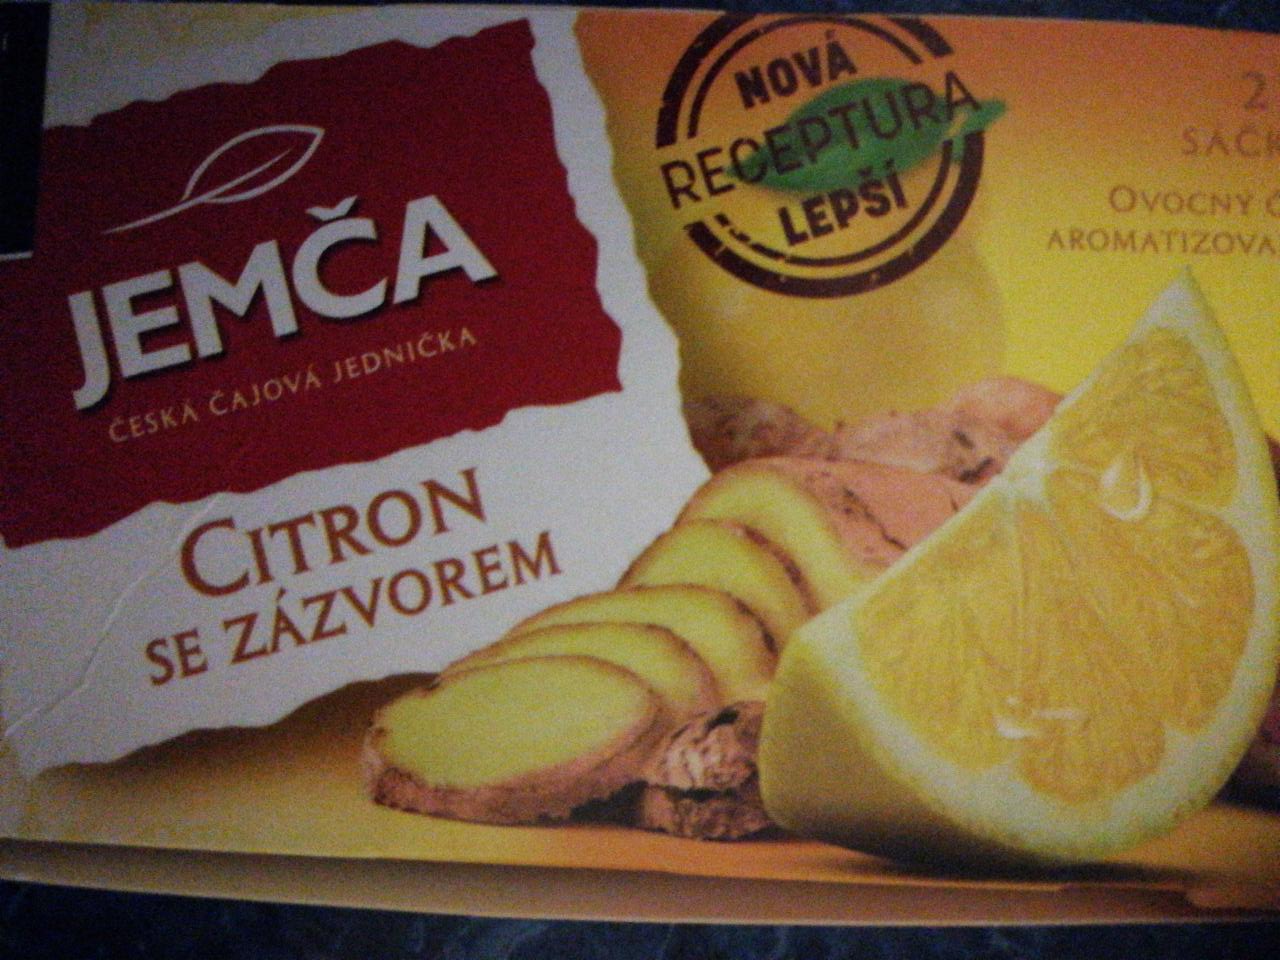 Fotografie - ovocný čaj citron se zázvorem Jemča